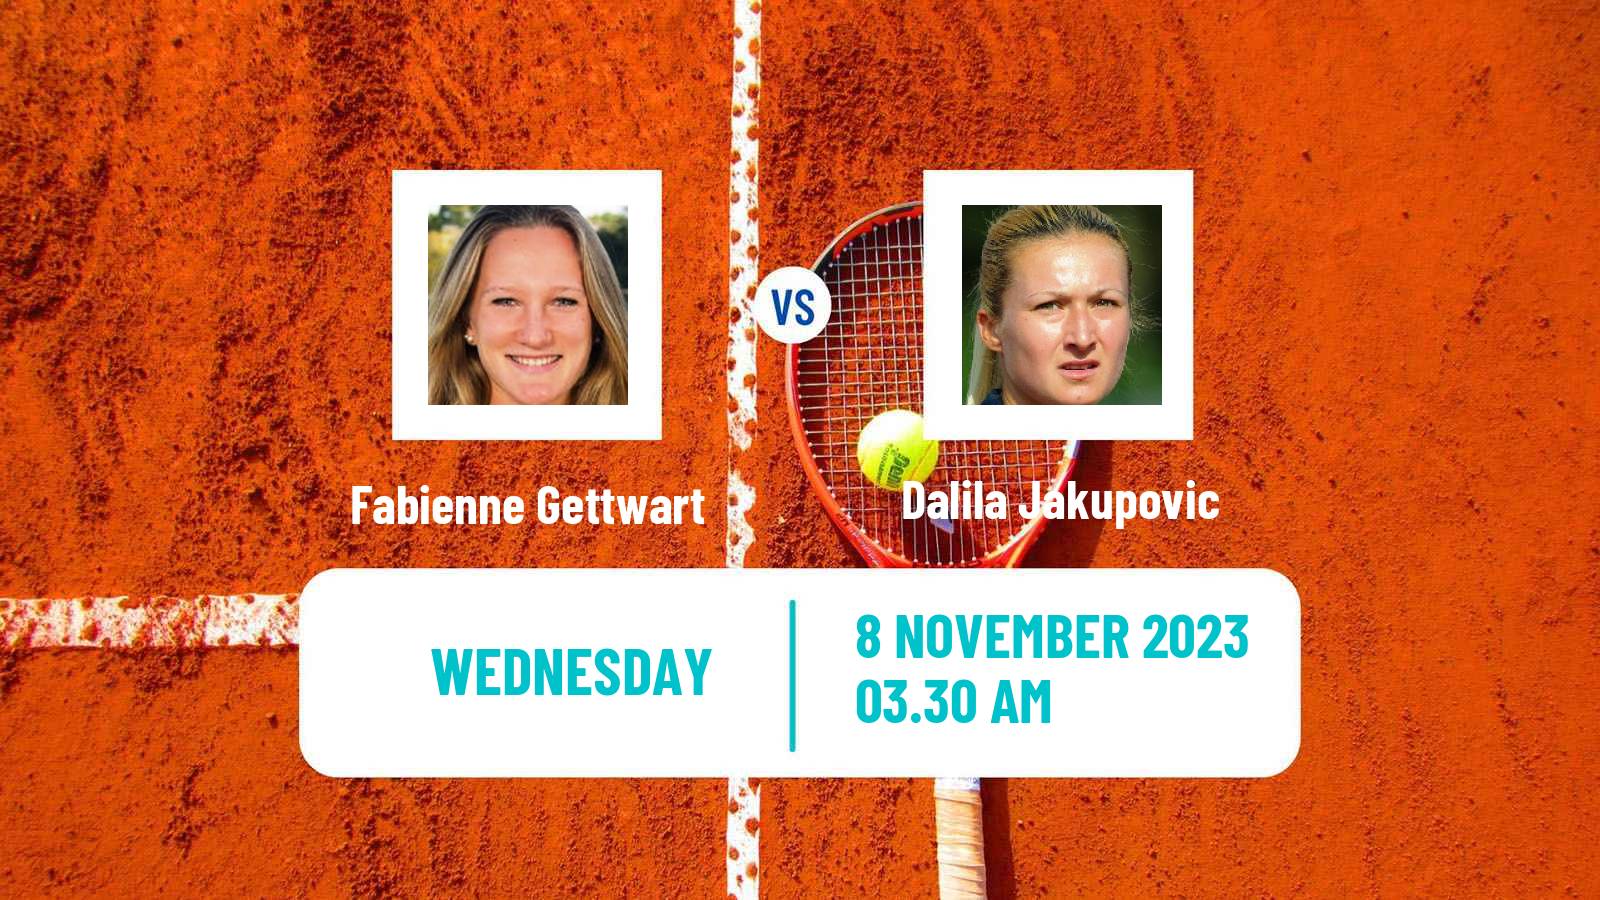 Tennis ITF W40 Heraklion 2 Women Fabienne Gettwart - Dalila Jakupovic